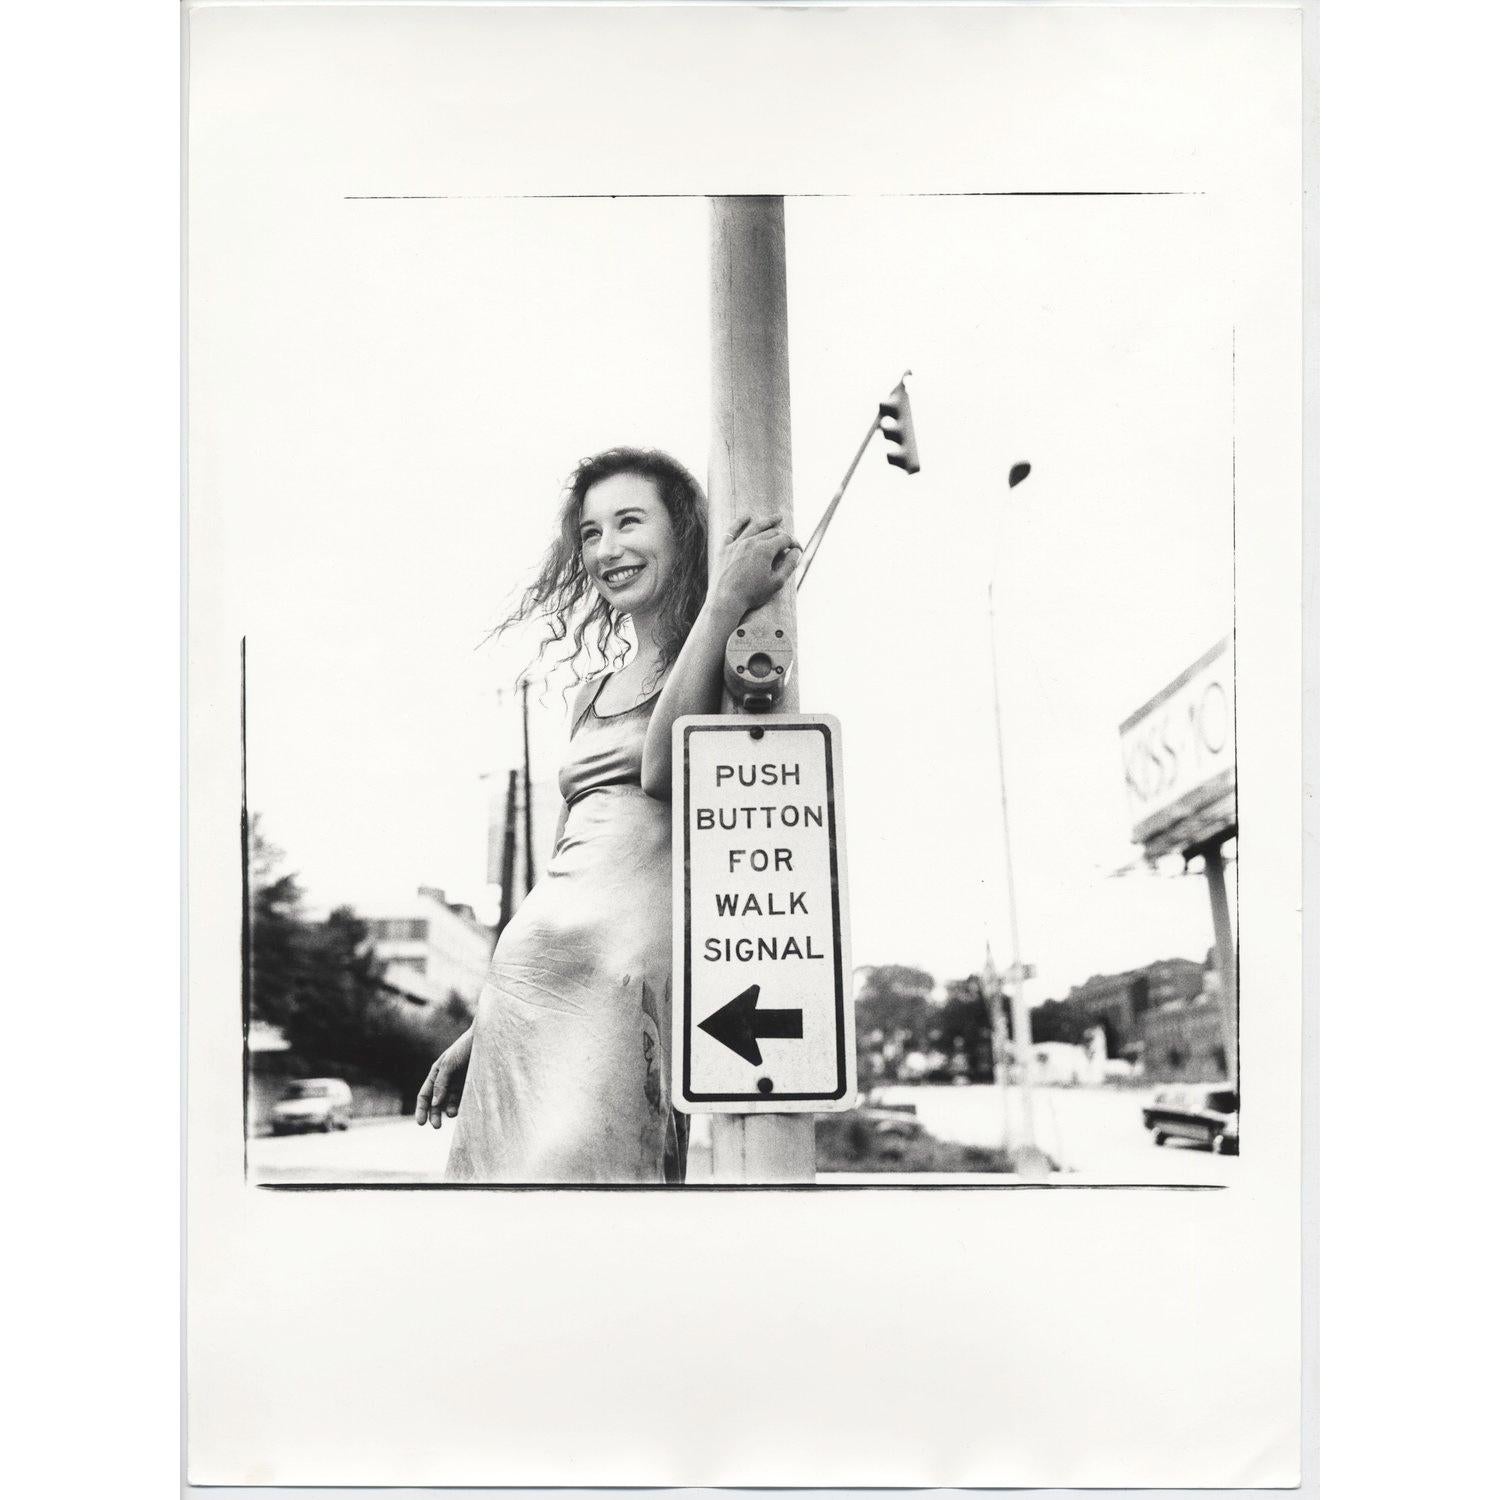 Tirage original 12x16" du photographe Jake Chessum de Tori Amos, imprimé à la main dans une chambre noire. Imprimé par Jake dans les années 90, à l'époque de la prise de vue. 

Jake se souvient de la session : "Tori Amos a joué deux nuits à Atlanta,